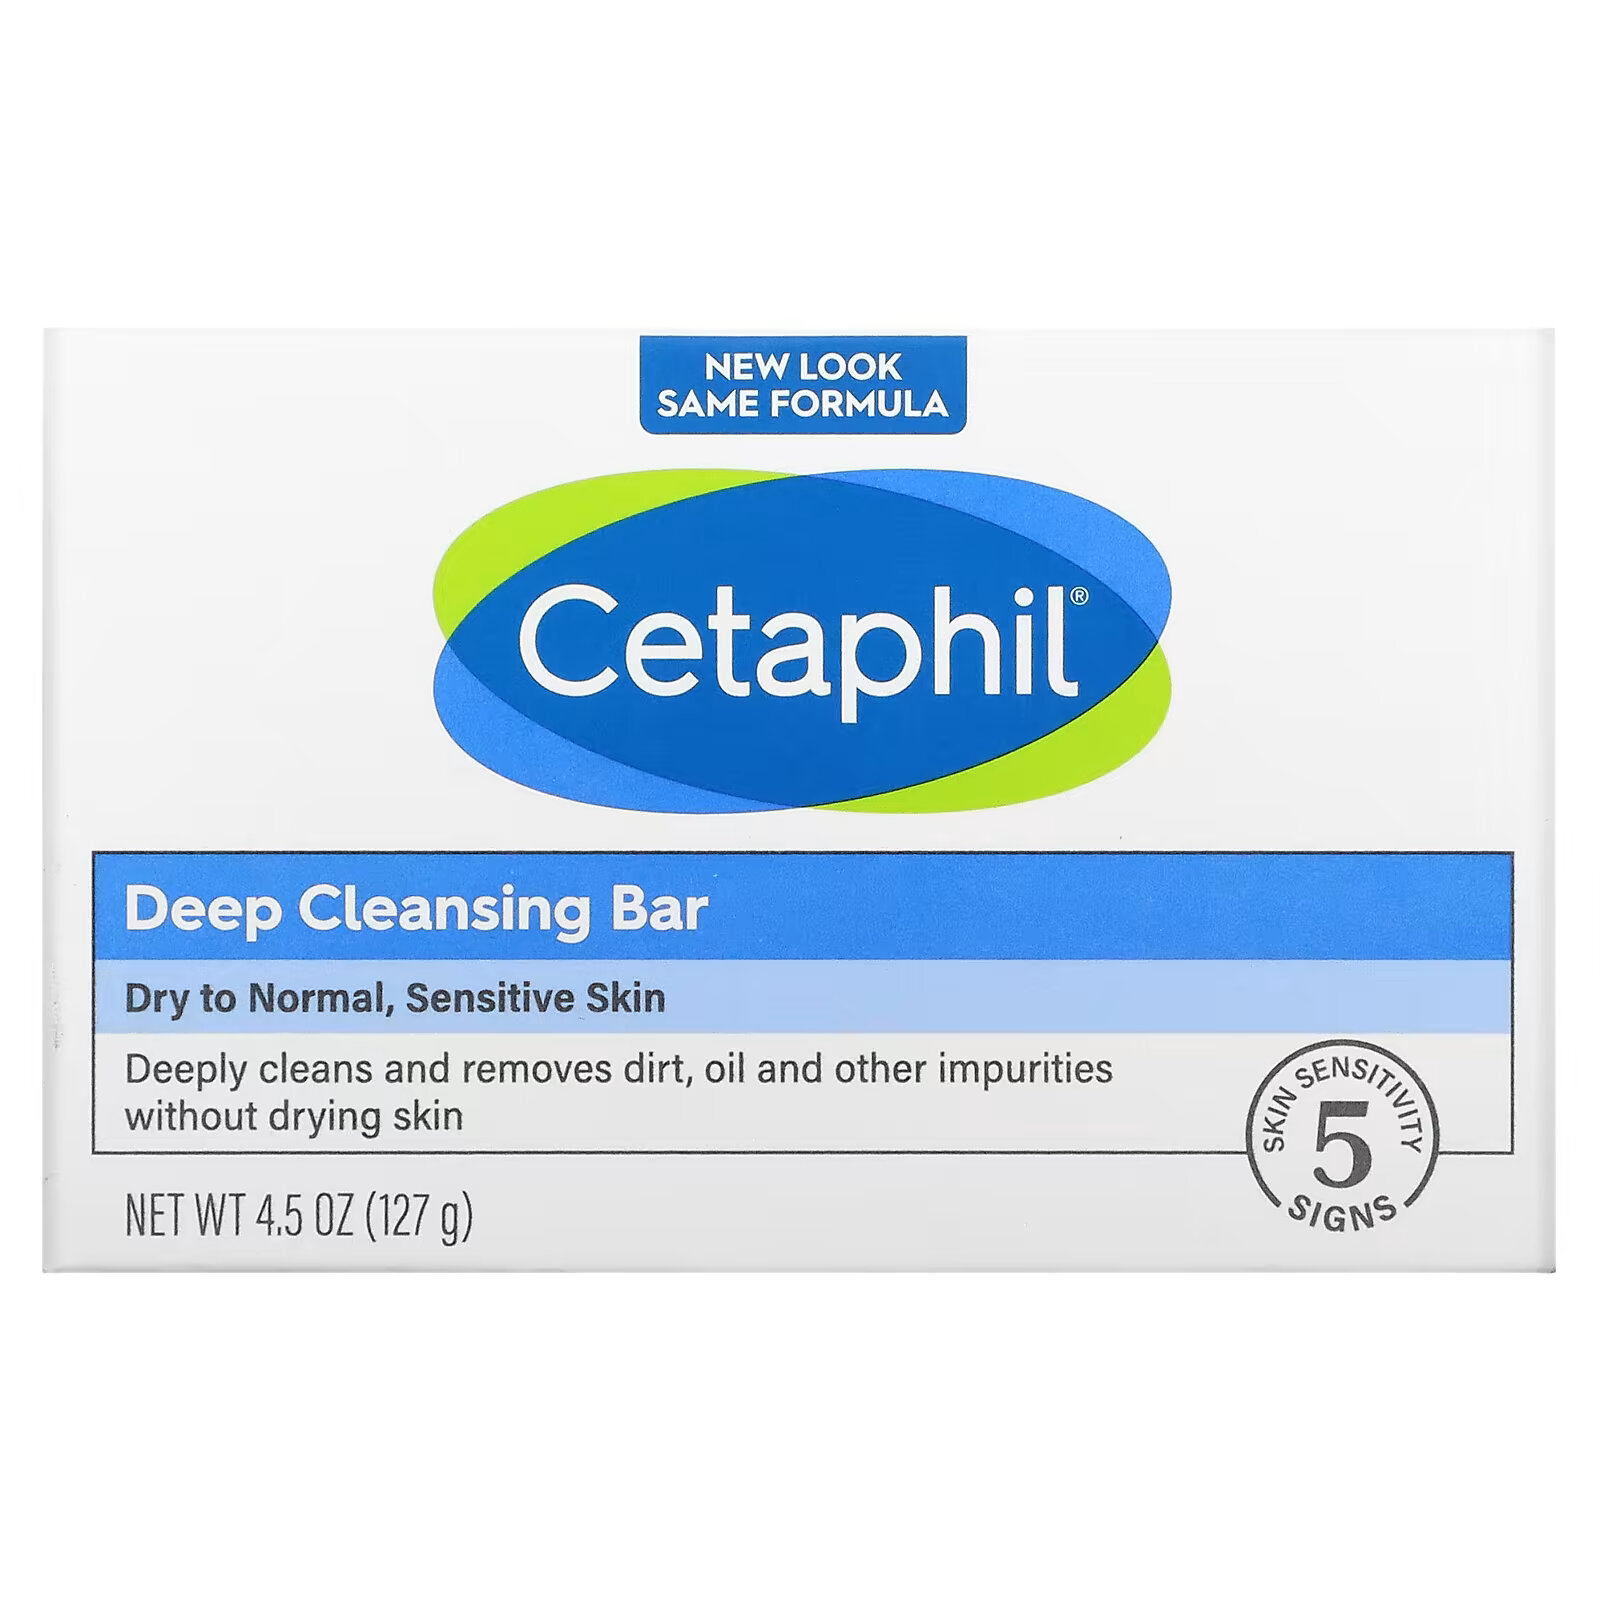 Мыло Cetaphil для глубокого очищения, 127 г мягкое очищающее мыло cetaphil 127 г